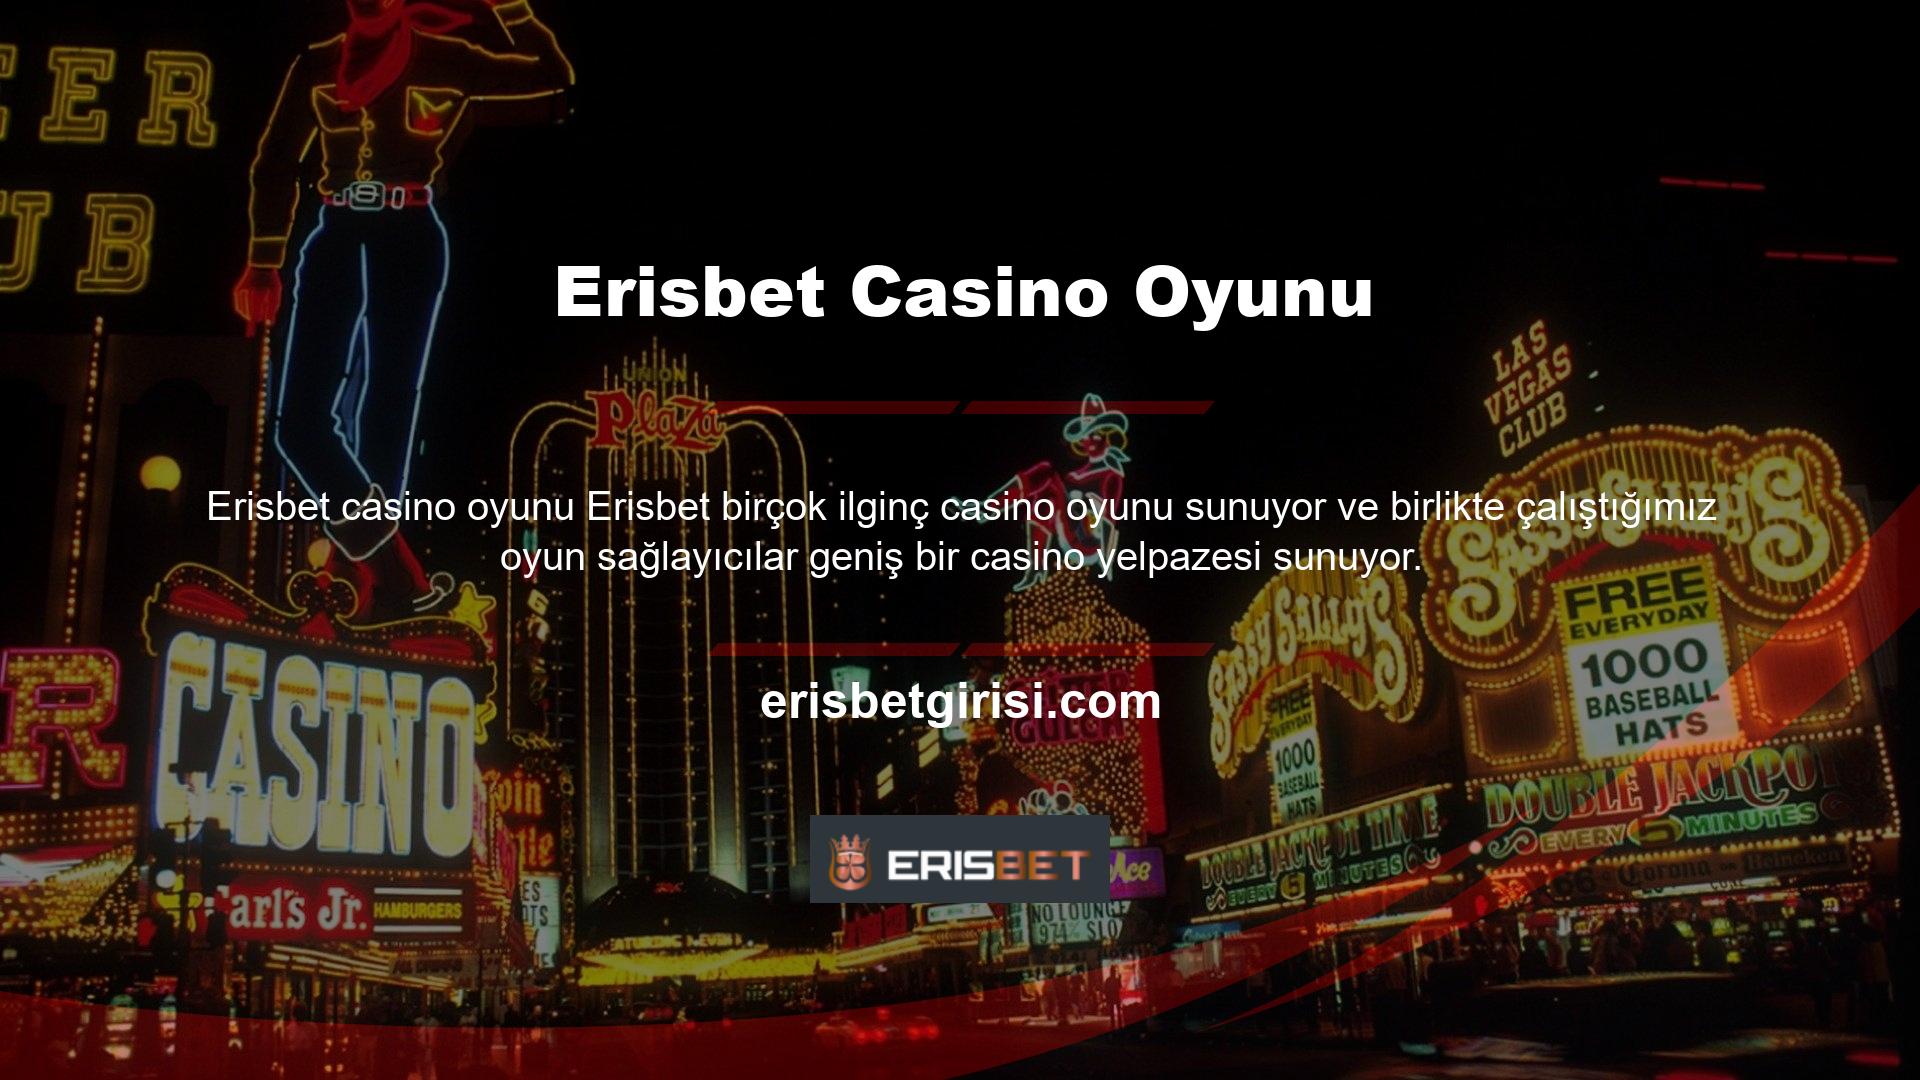 Benzer şekilde Erisbet dünyanın en profesyonel oyun sağlayıcılarıyla olan ortaklıkları da her açıdan güvenilir bir casino sistemi sağlamada kilit rol oynamaktadır